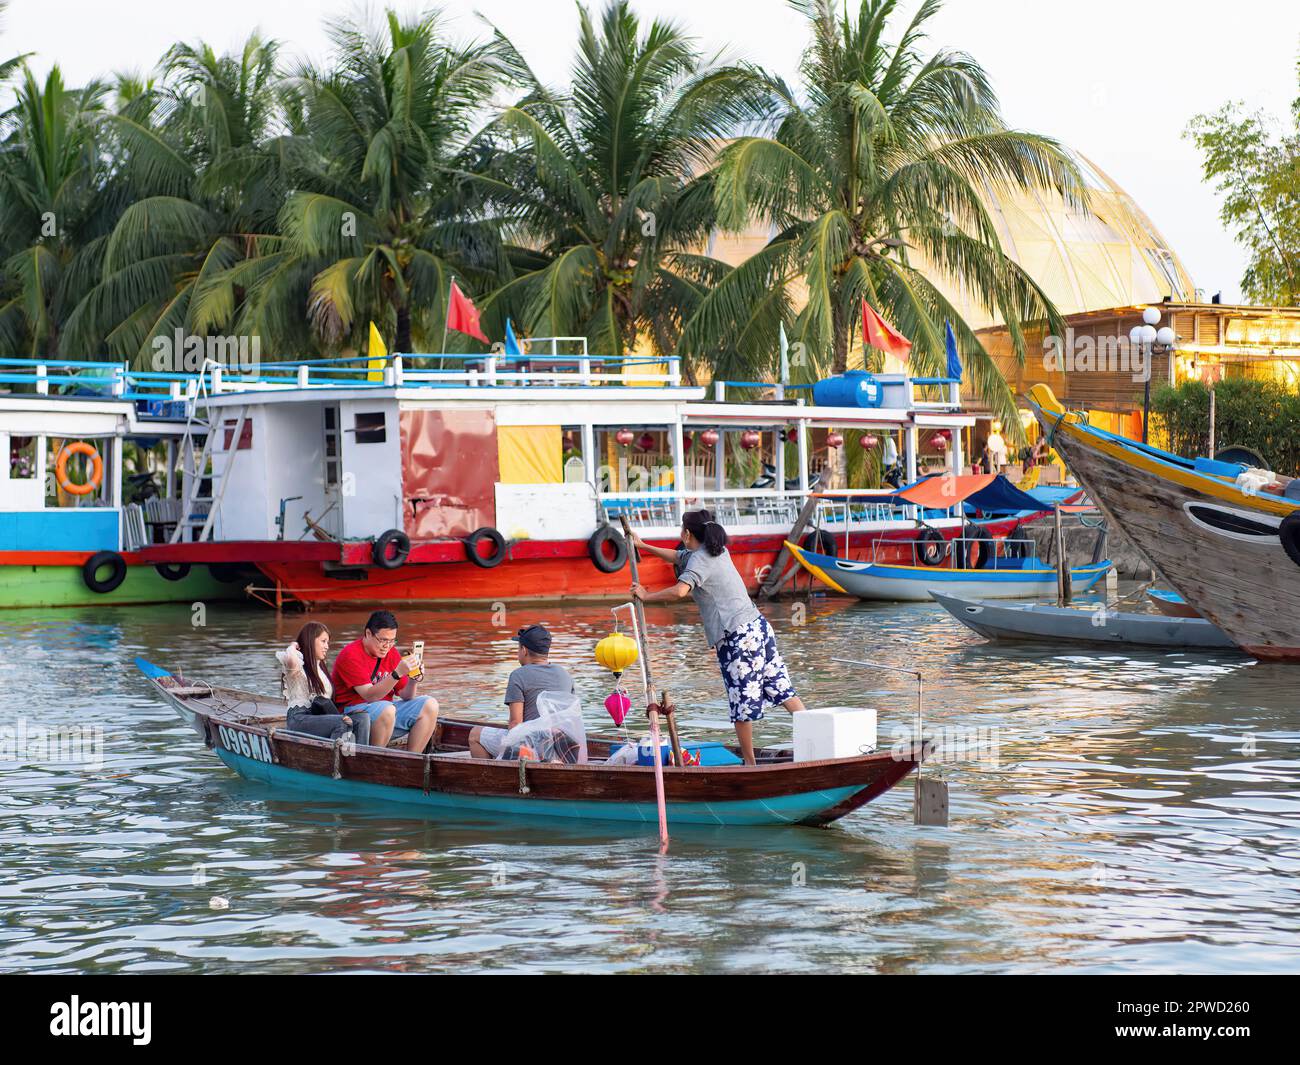 Touristes en bateau sur la rivière Thu bon à Hoi an, province de Quang Nam, Vietnam. La vieille ville de Hoi an est un site du patrimoine mondial, et célèbre pour son puits p Banque D'Images